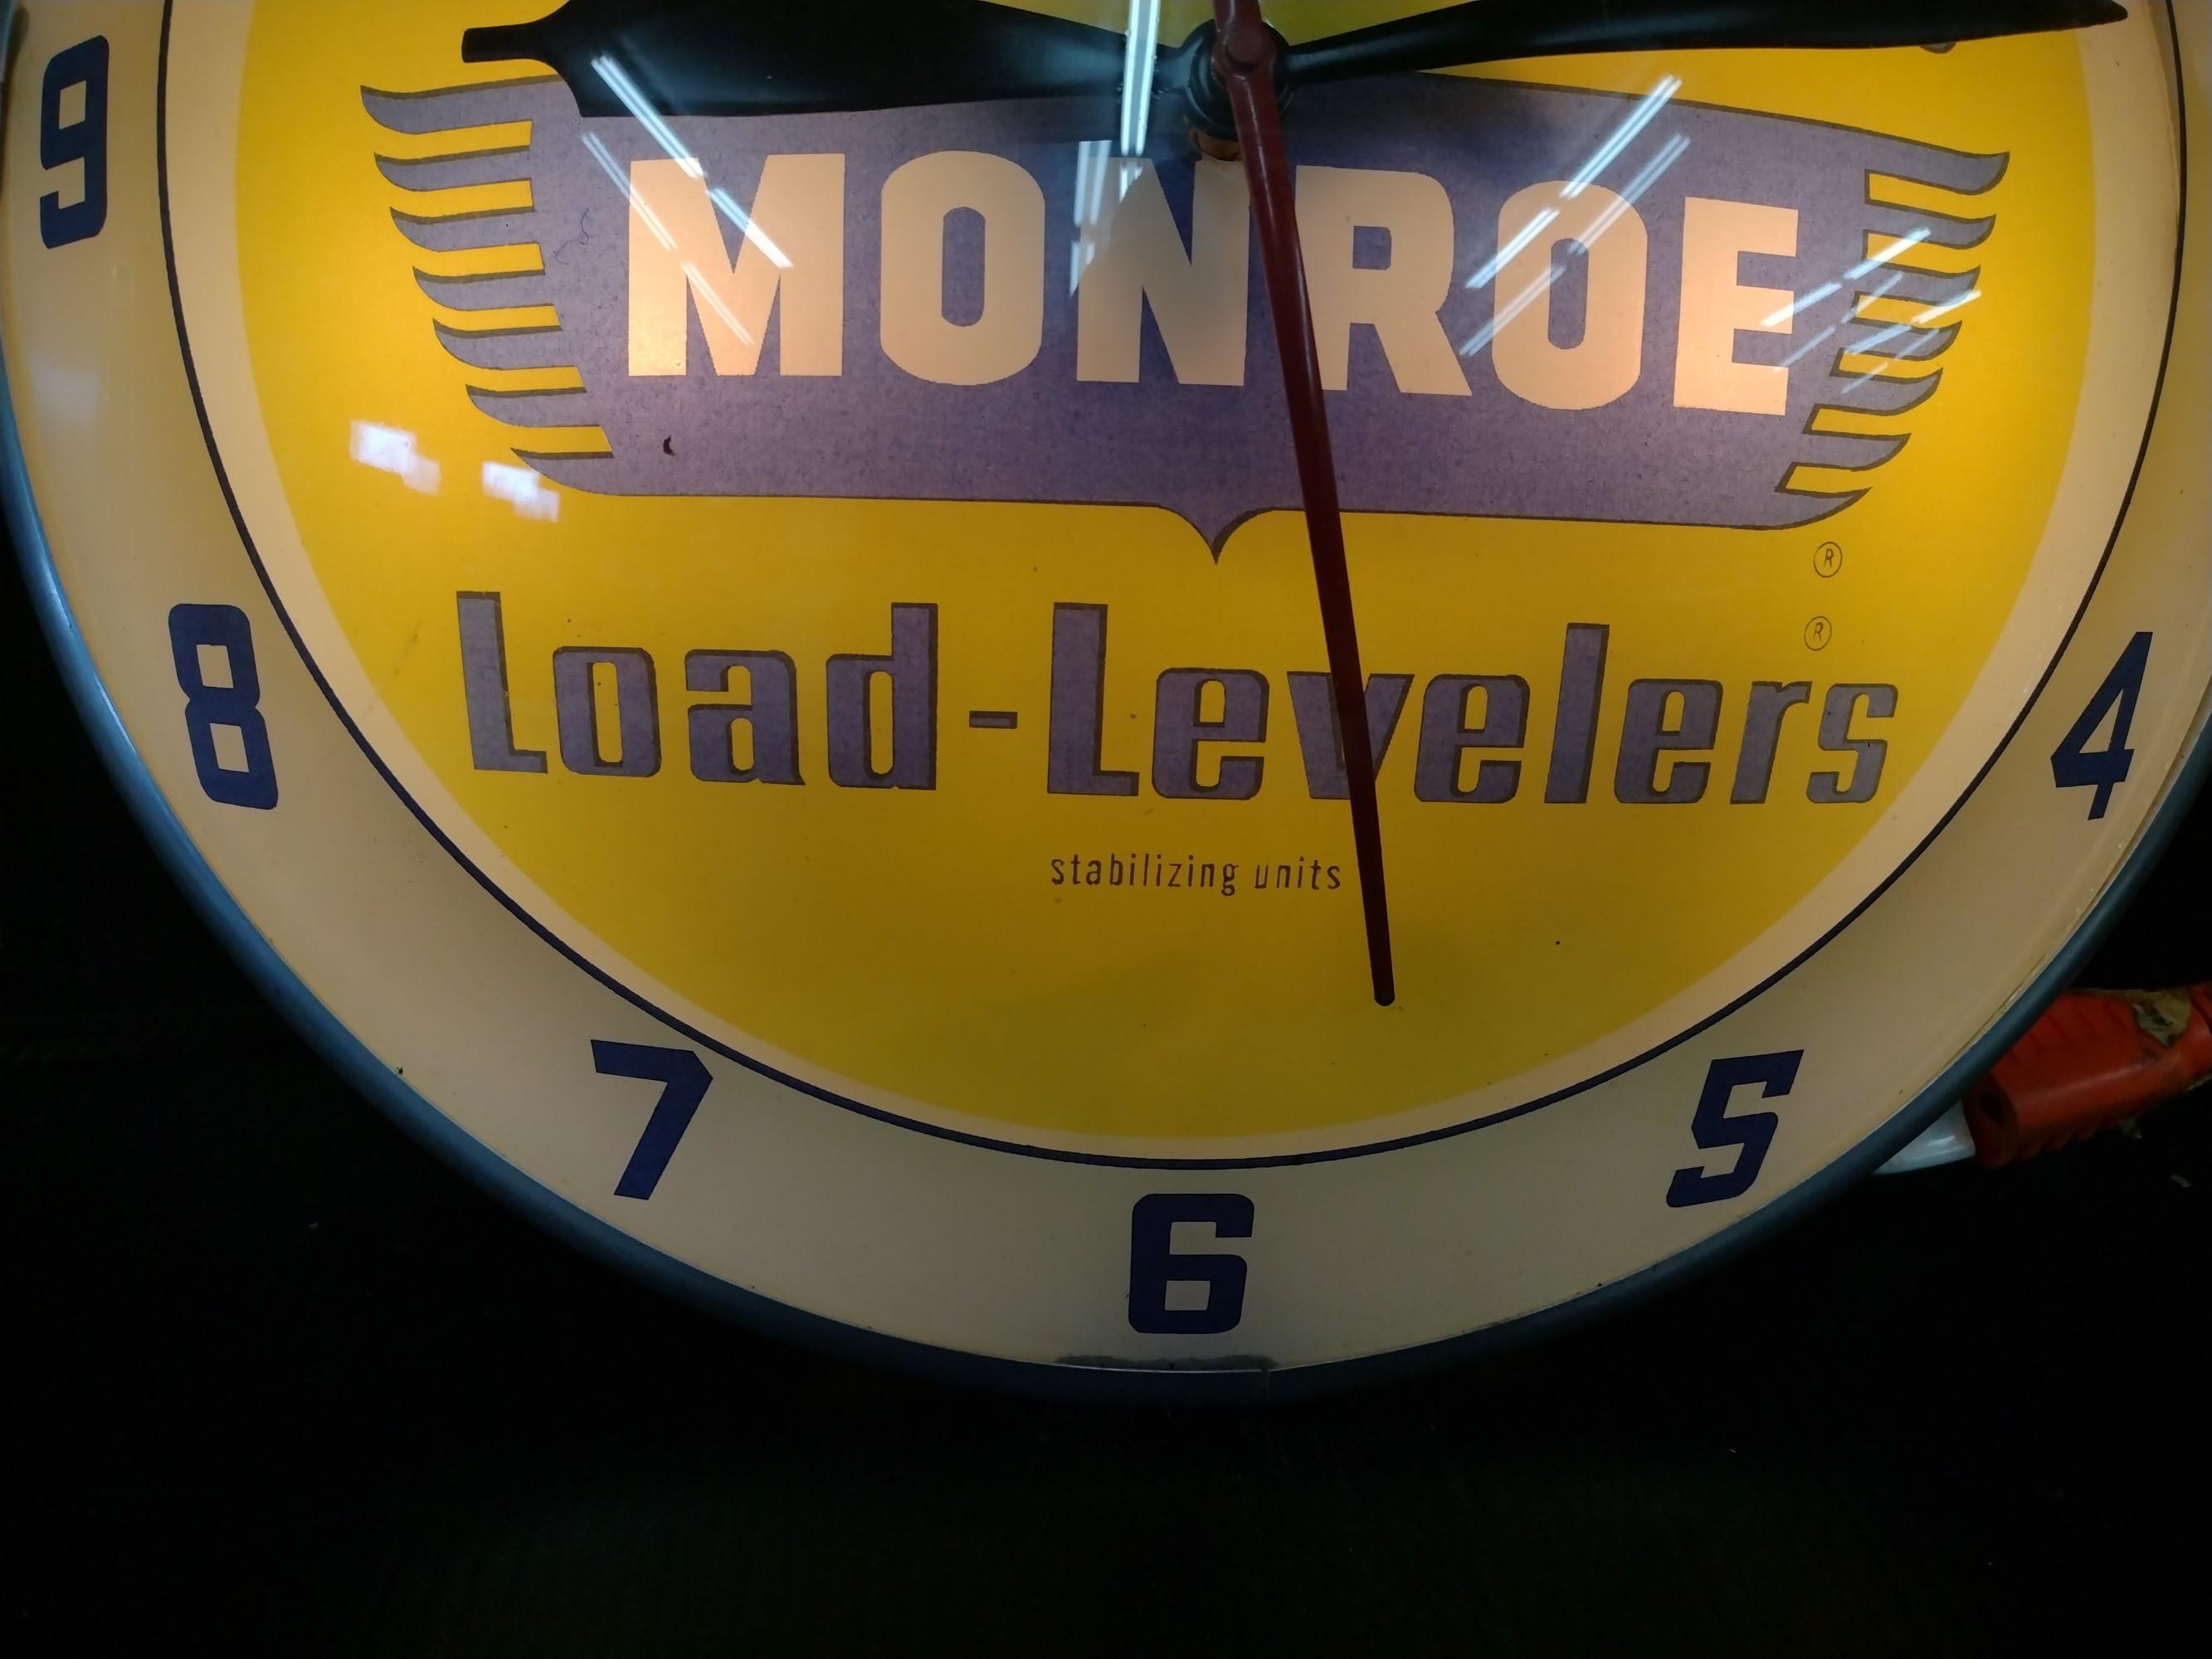 AP Monroe Shock Absorbers Lighted Advertising Clock